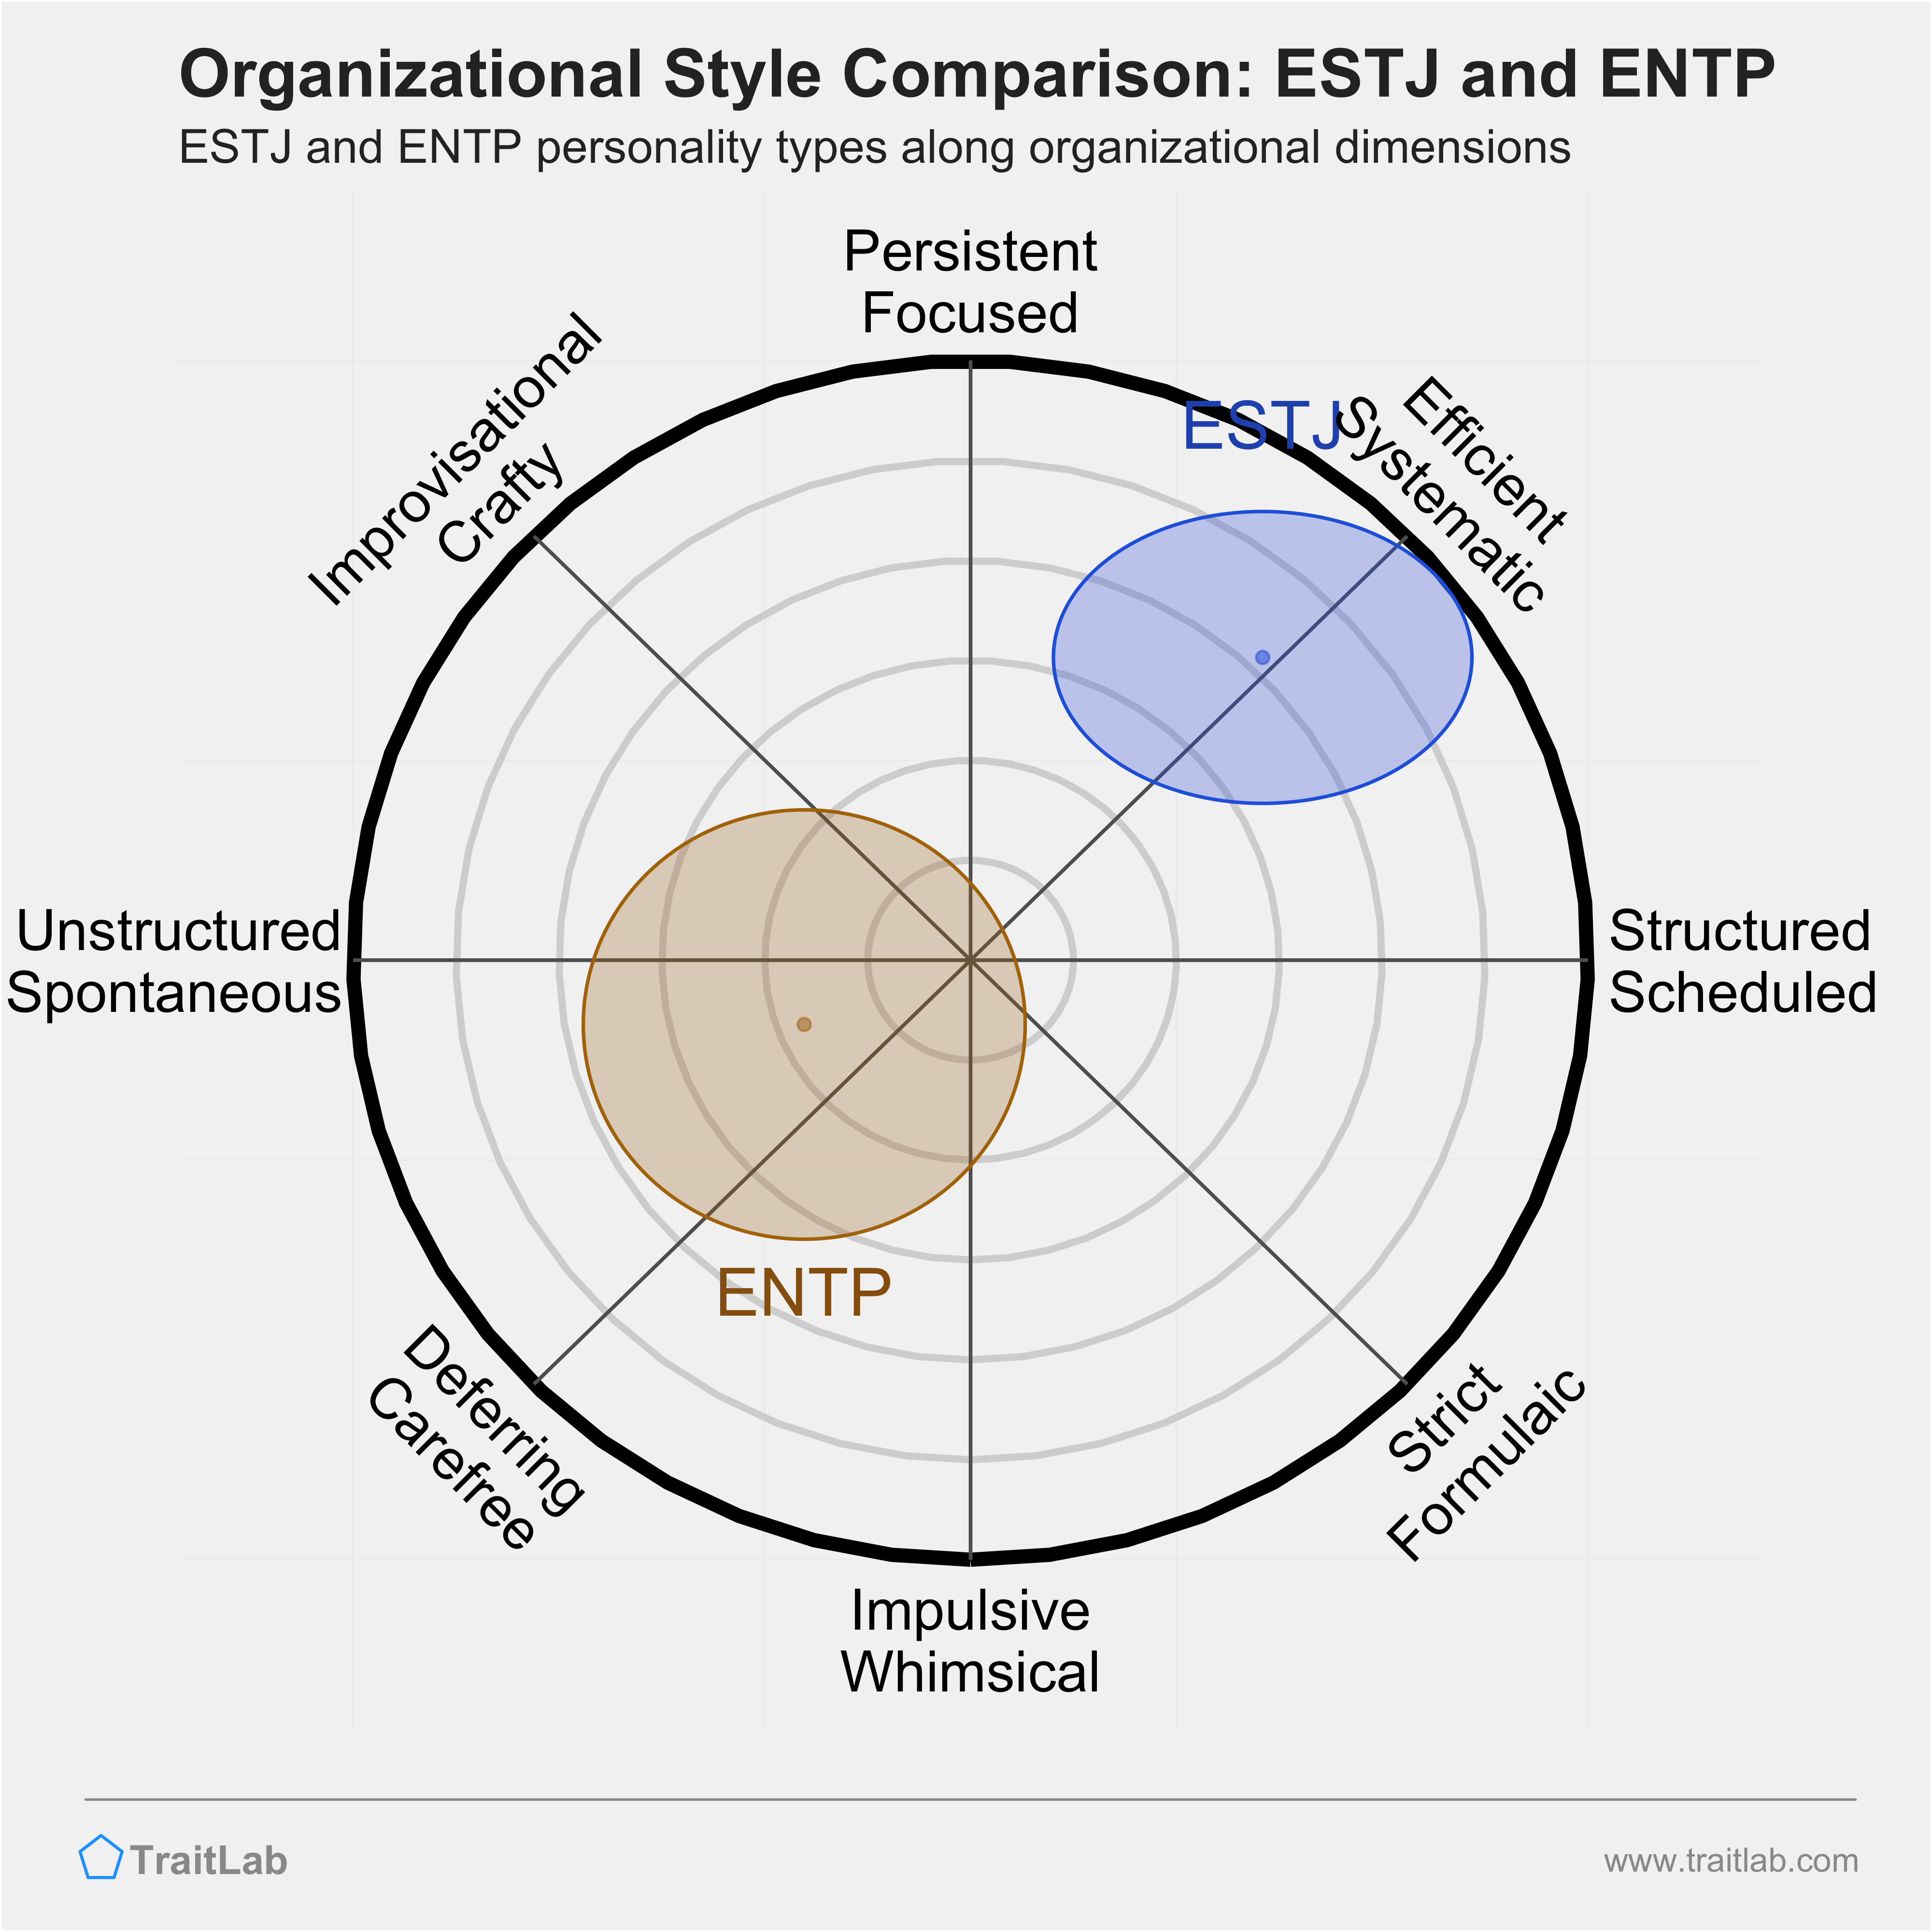 ESTJ and ENTP comparison across organizational dimensions